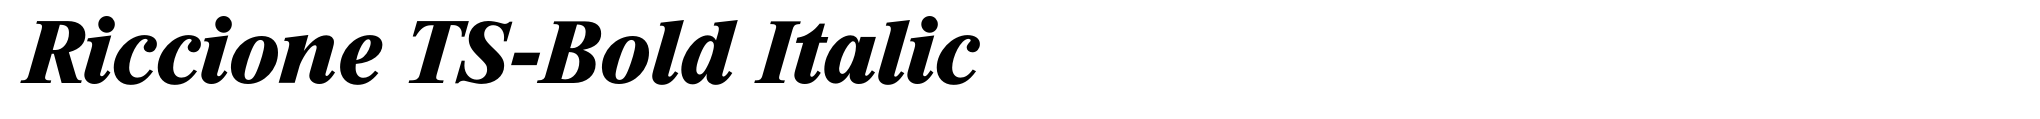 Riccione TS-Bold Italic image